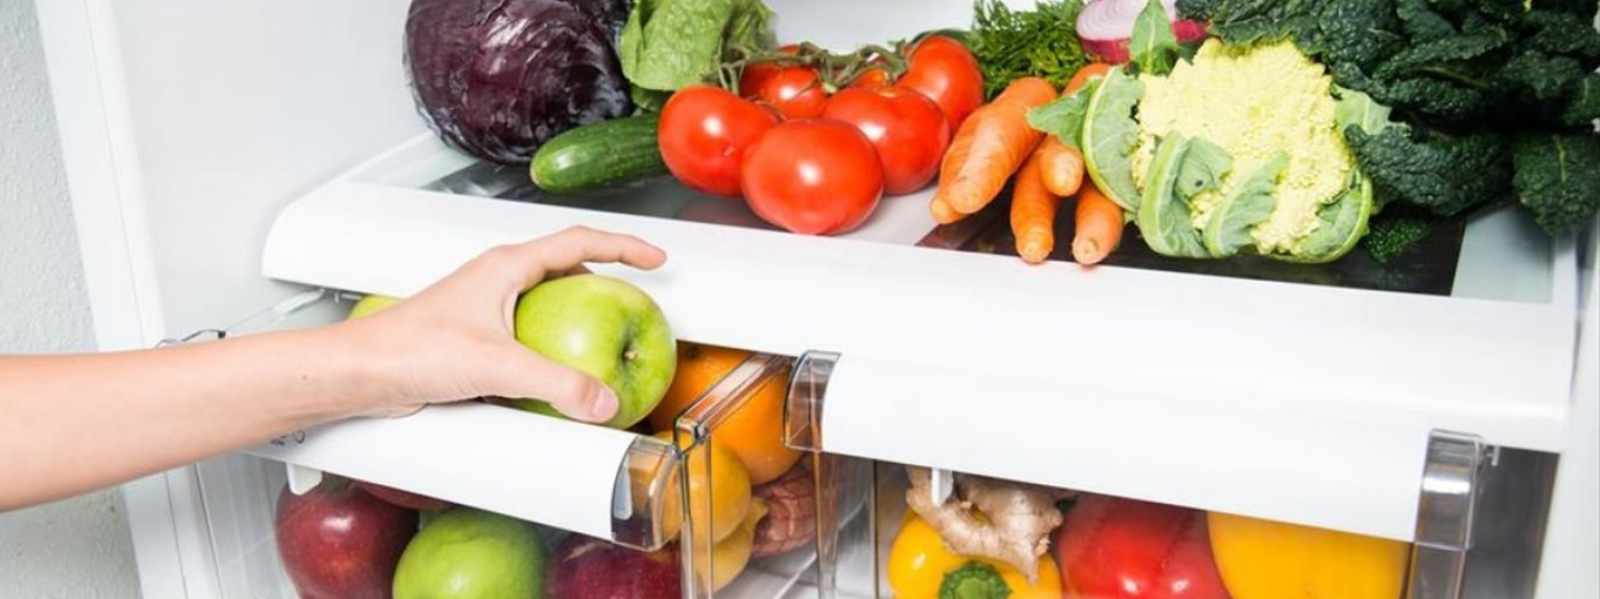 Το κόλπο για να κάνουμε τα τρόφιμα στα ντουλάπια και το ψυγείο μας να αντέχουν περισσότερο